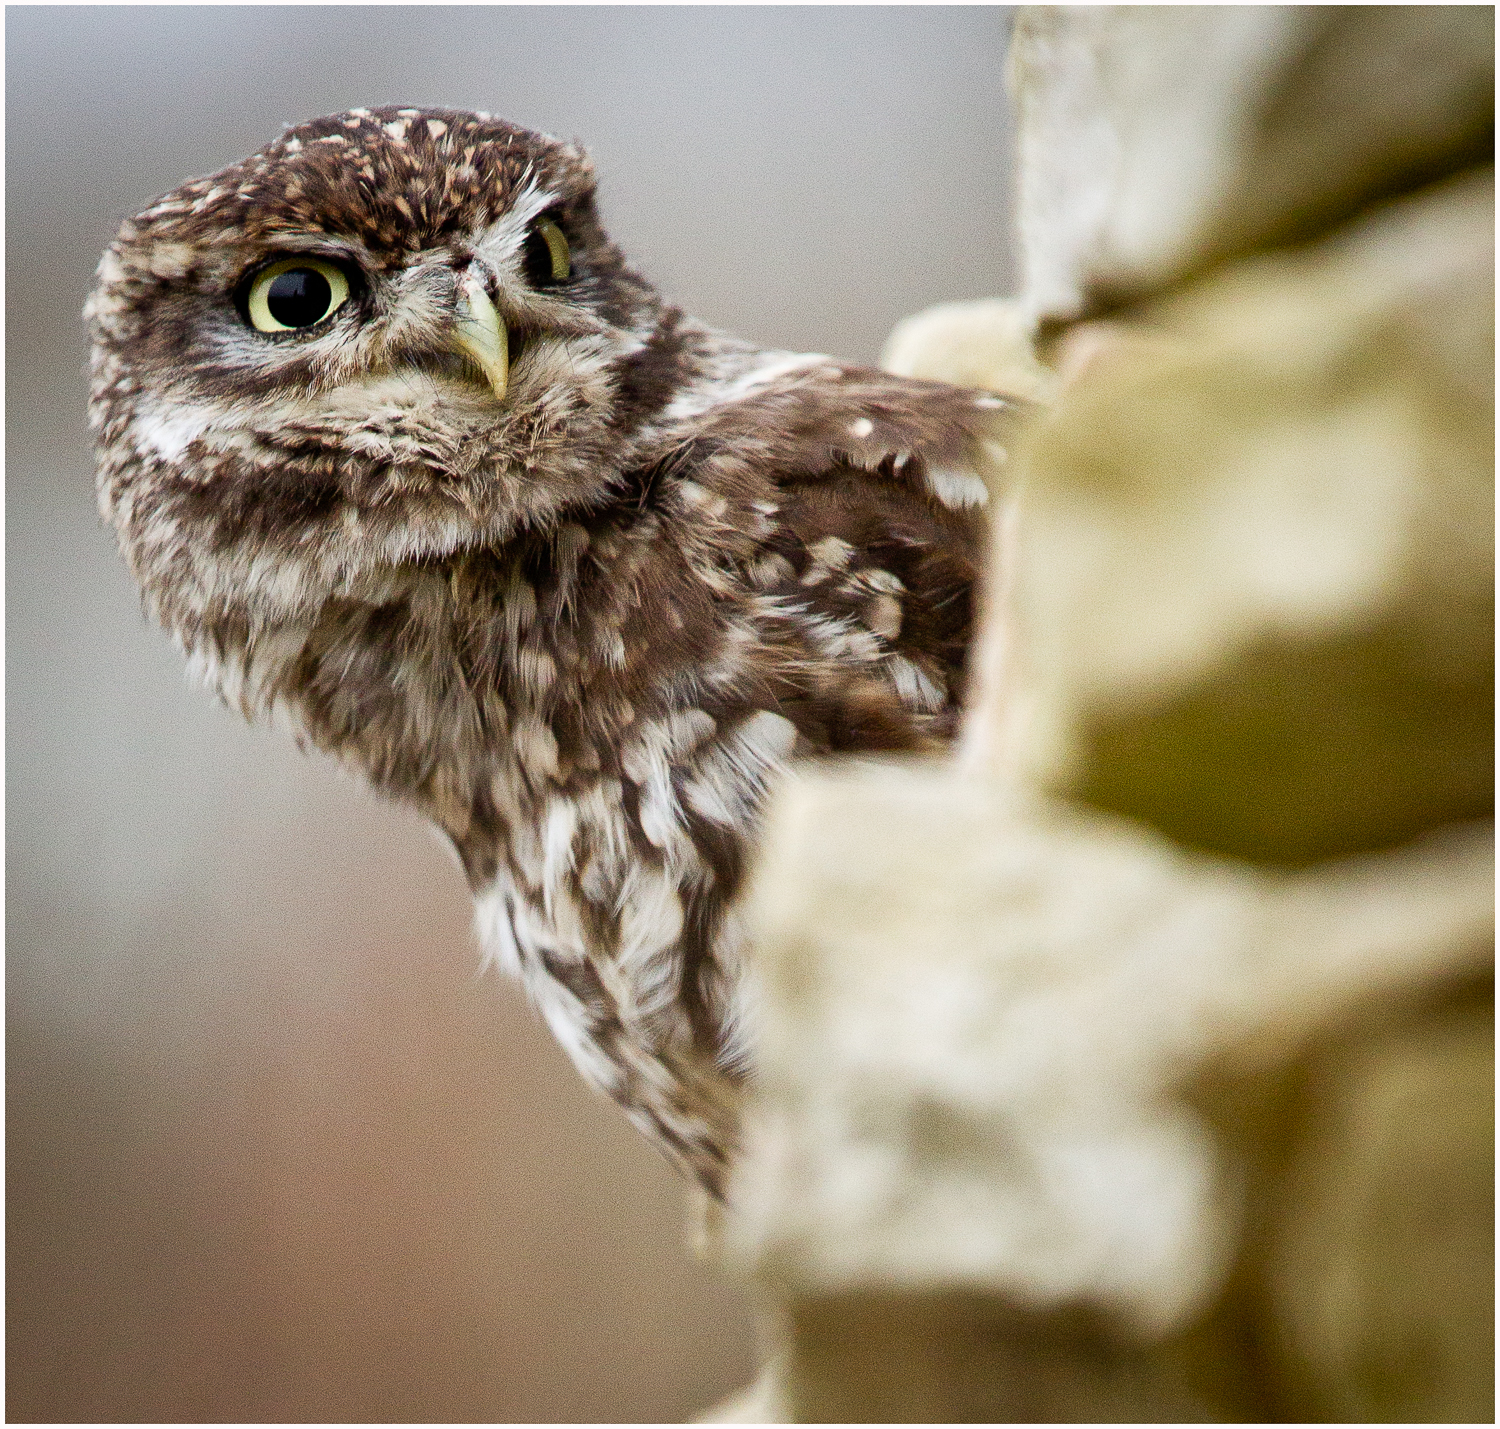 Little Owl Peeking.jpg